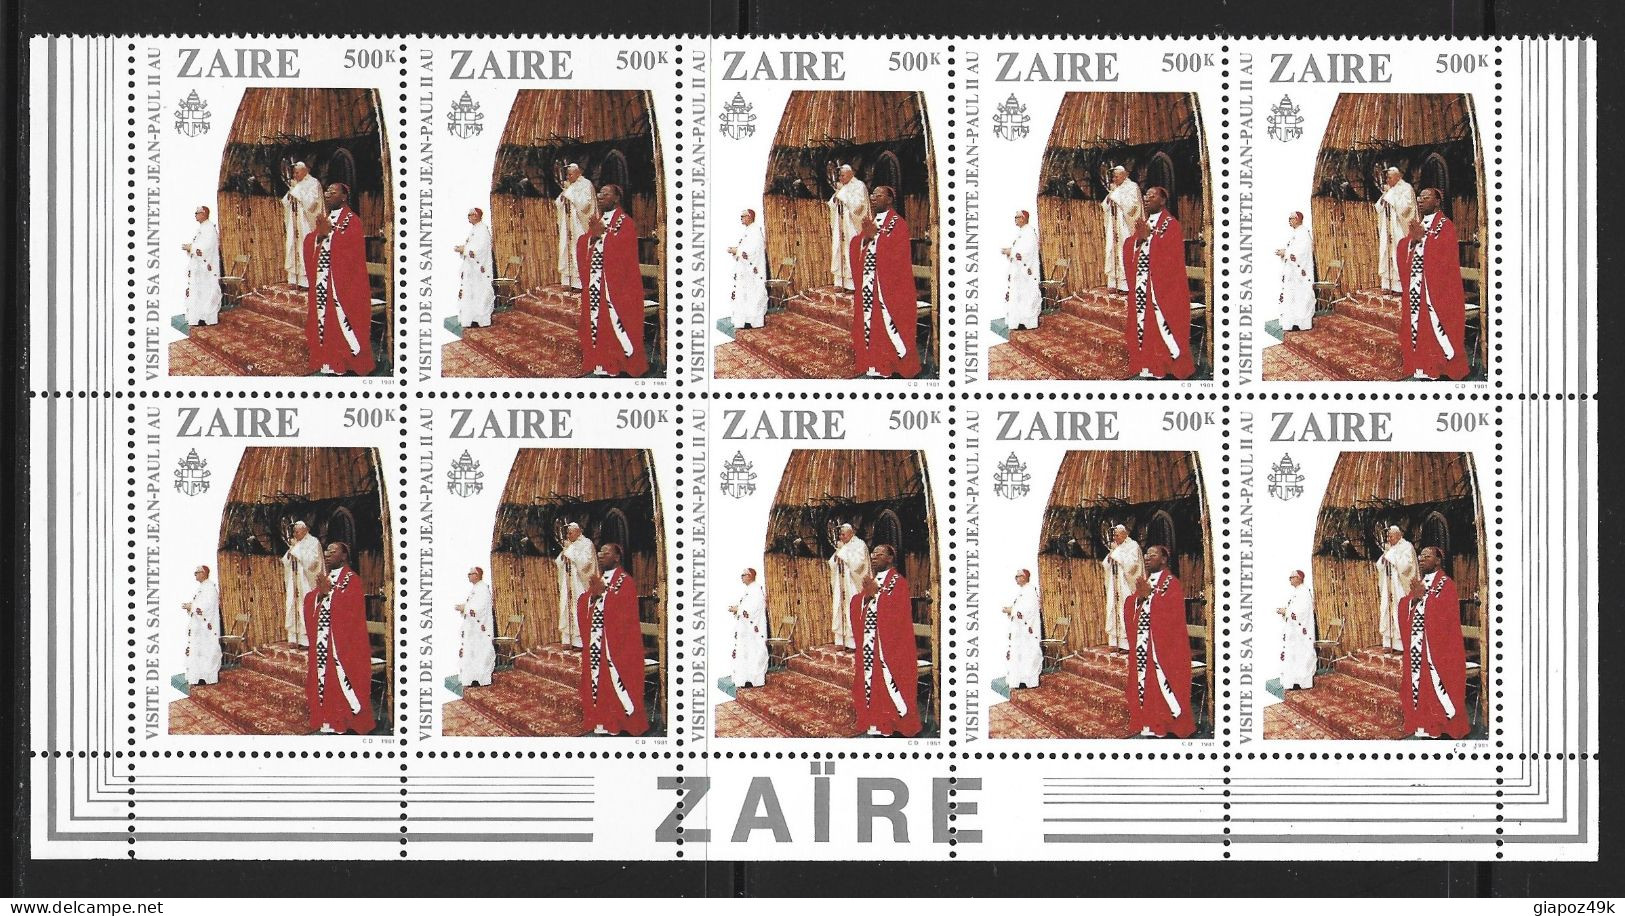 ● ZAIRE CONGO 1981 ֍ PAPA JEAN PAUL II ● Giovanni Paolo II ● BLOCCHI di 10 valori ● serie completa ● cat. 130 € ● X ●